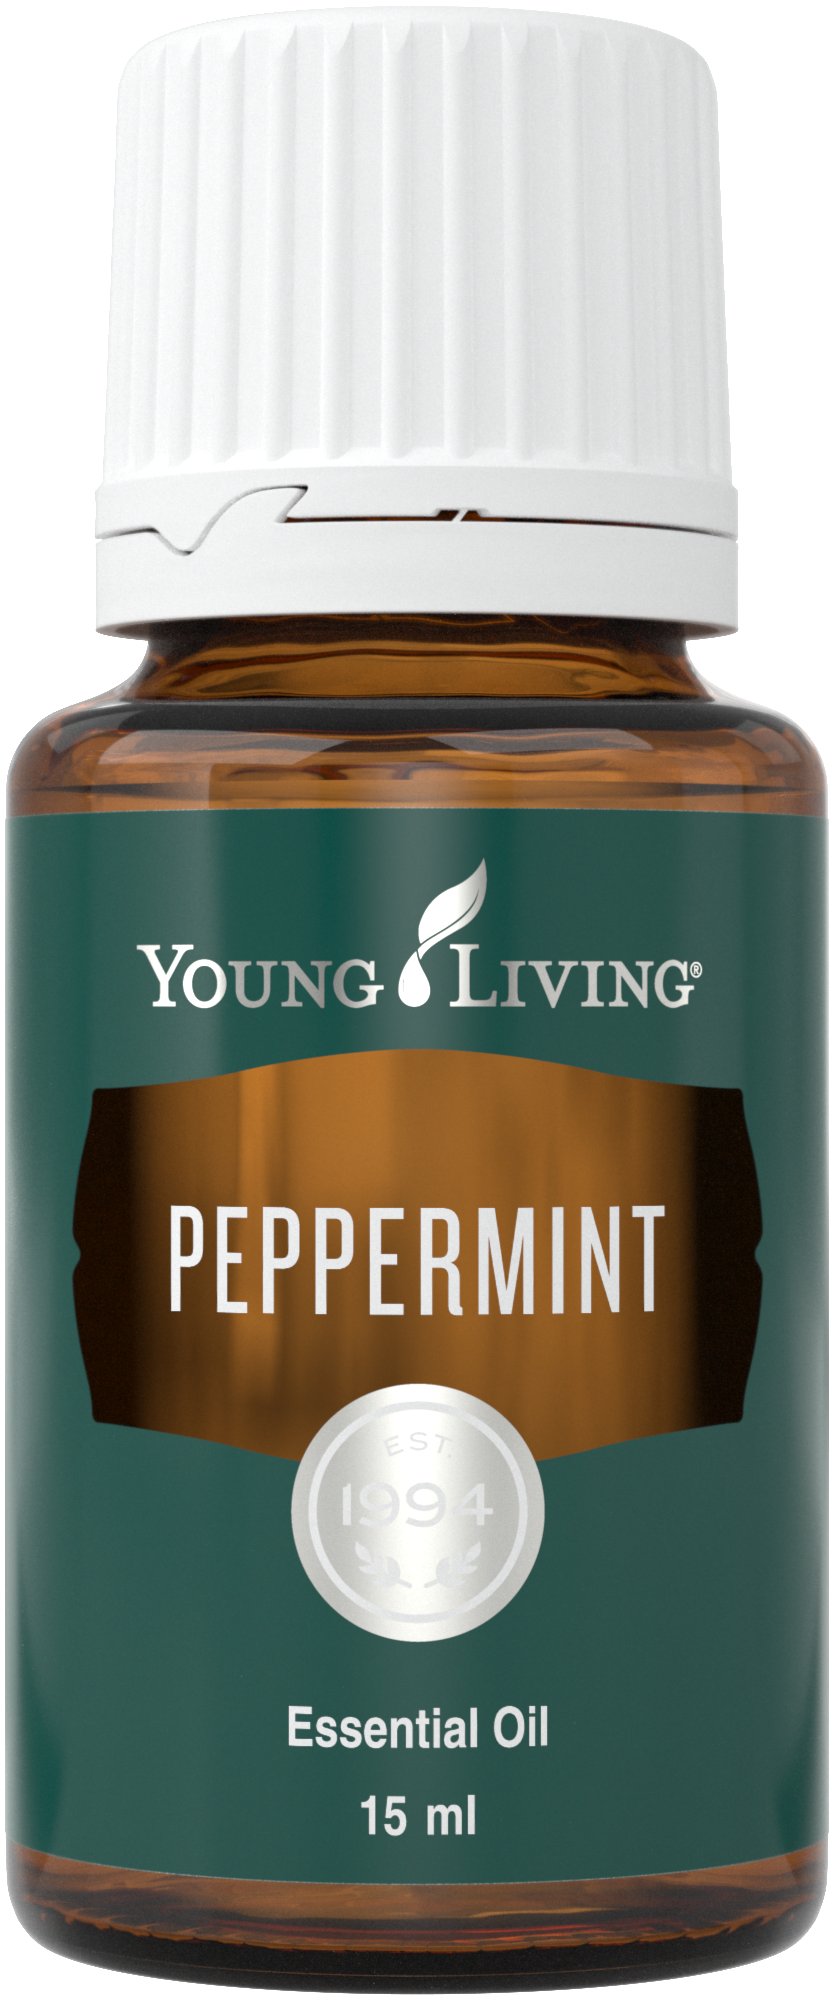 El aceite esencial Peppermint tiene un aroma familiar y reconocible, pero es mucho más que solo un aroma nostálgico y fresco. 